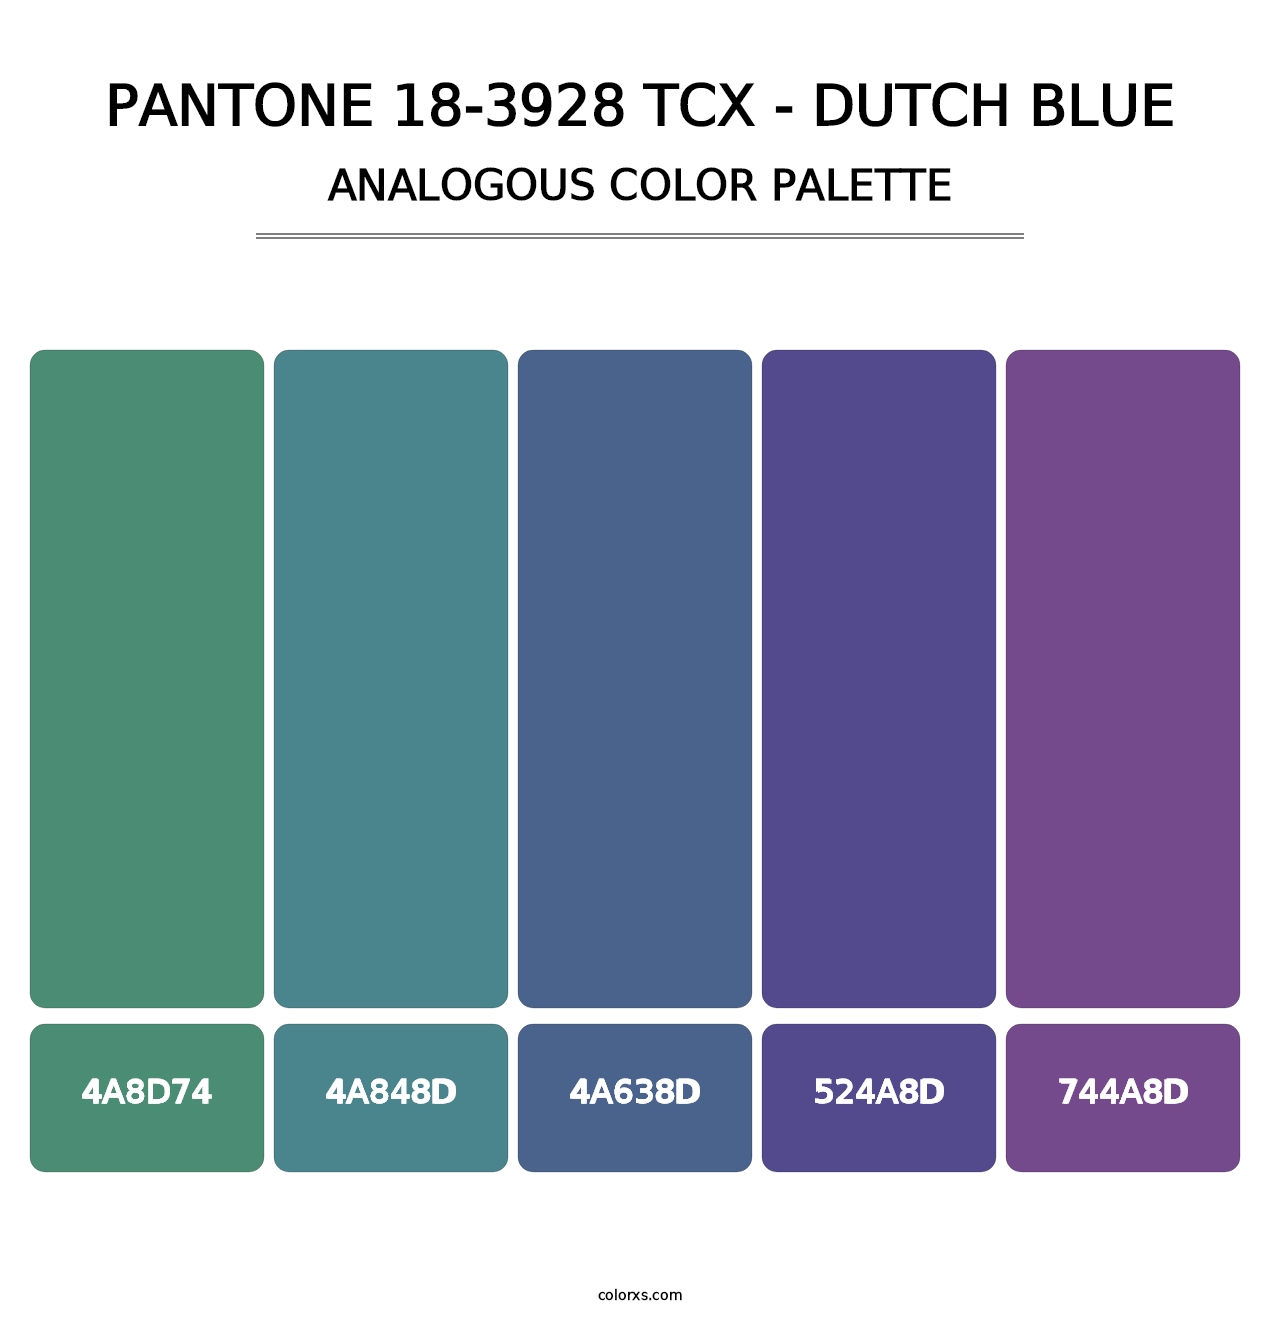 PANTONE 18-3928 TCX - Dutch Blue - Analogous Color Palette